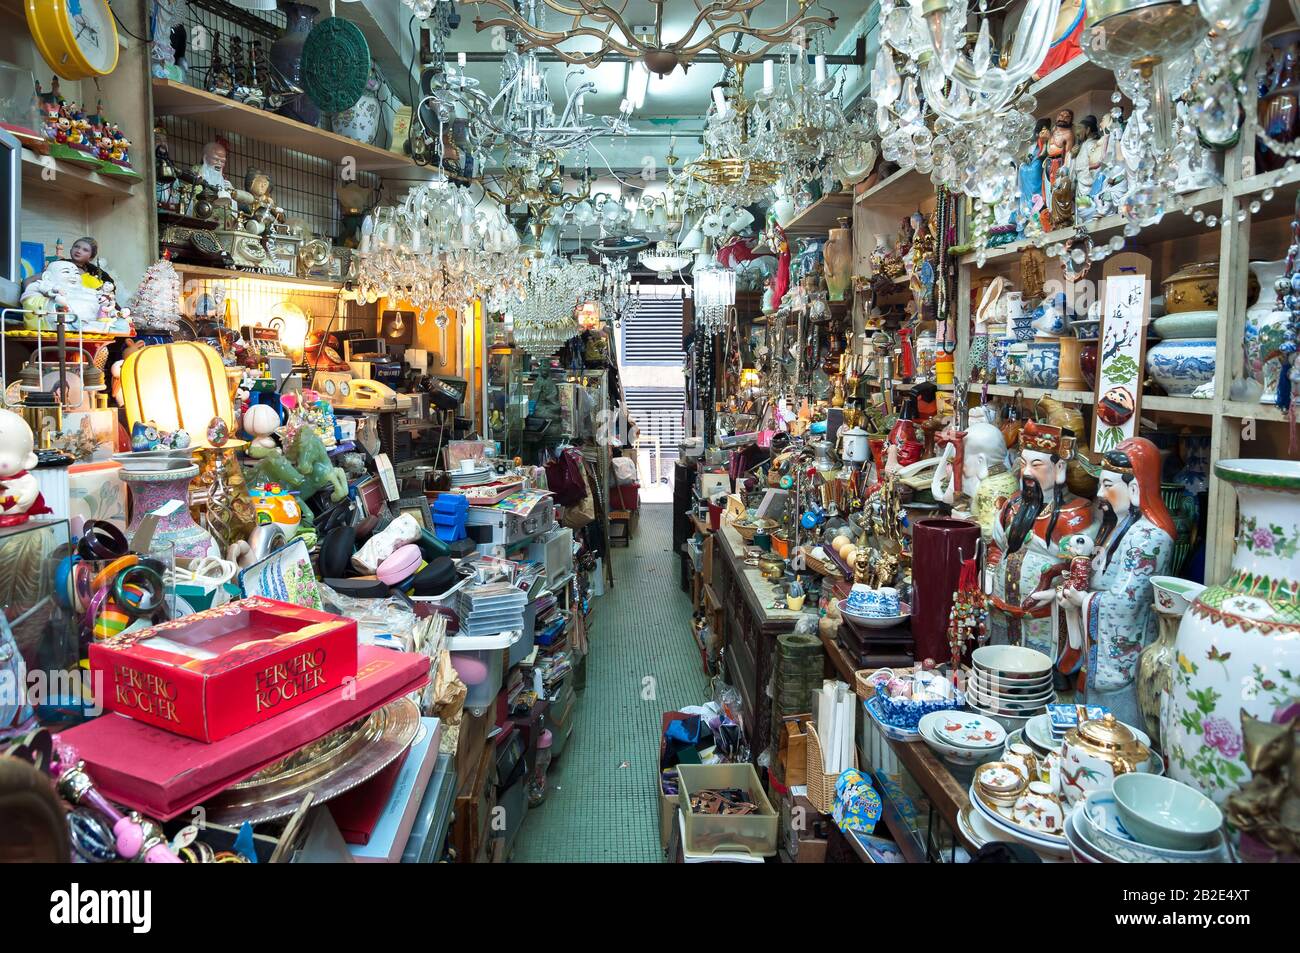 Cluttered junk shop at Upper Lascar Row antique market, Sheung Wan, Hong Kong Stock Photo